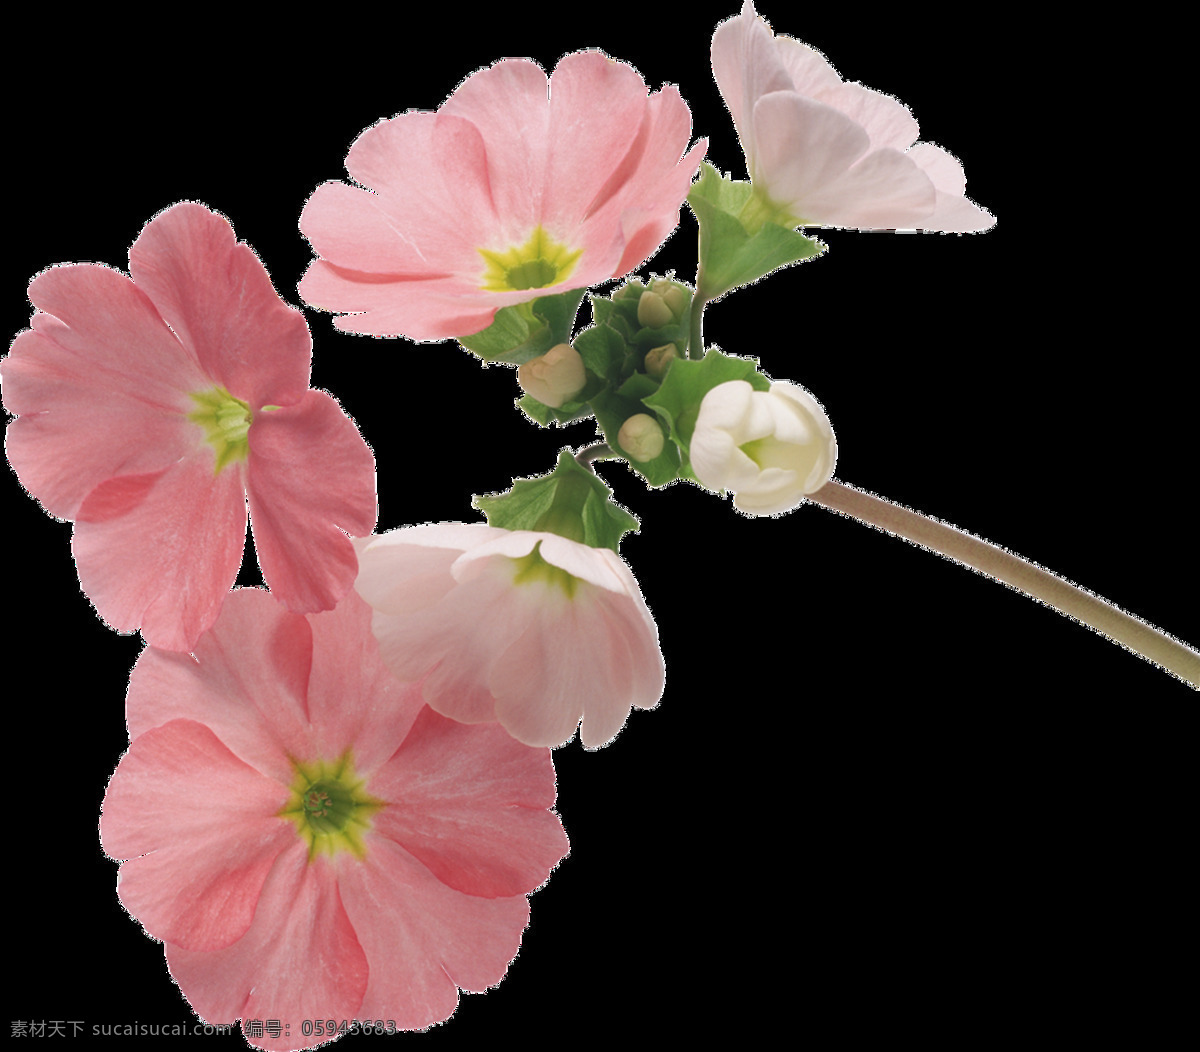 粉色 花卉 透明 卡通 抠图专用 装饰 设计素材